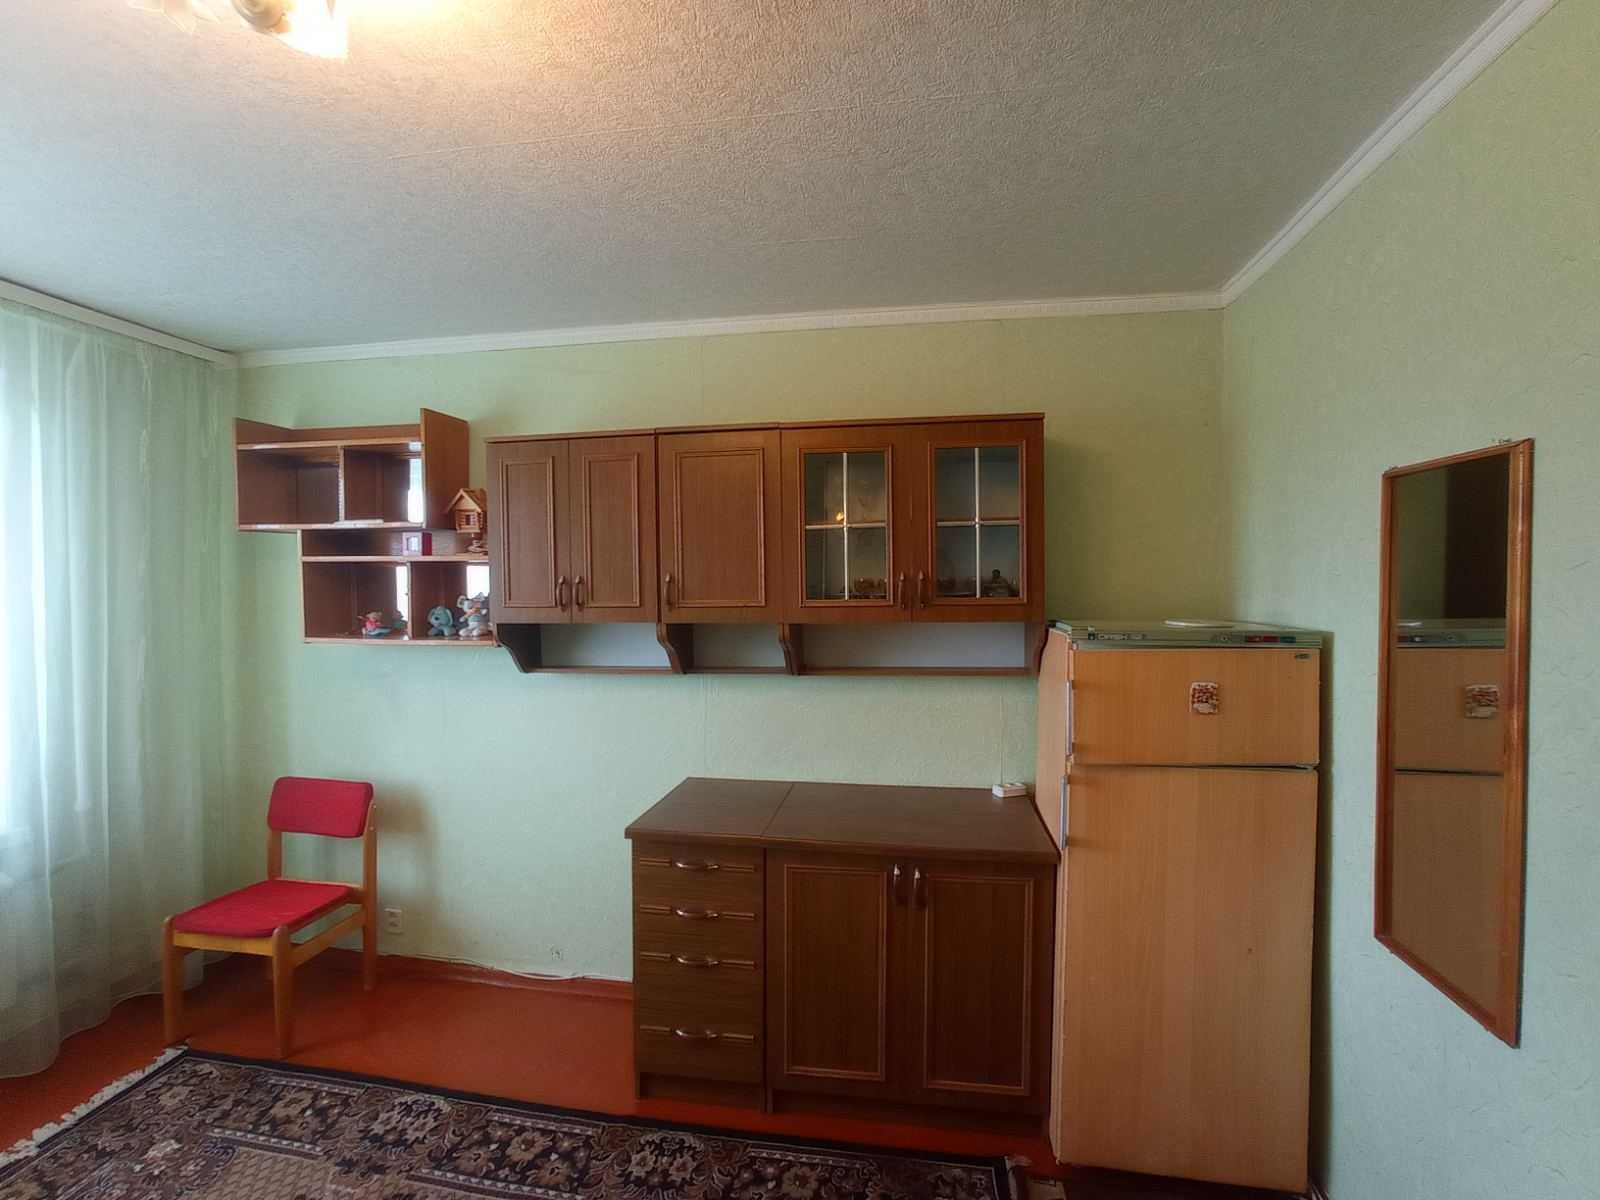 Продам квартиру гостиного типа ул.Селянская, 76 меб,ремонт ц5500 т.д